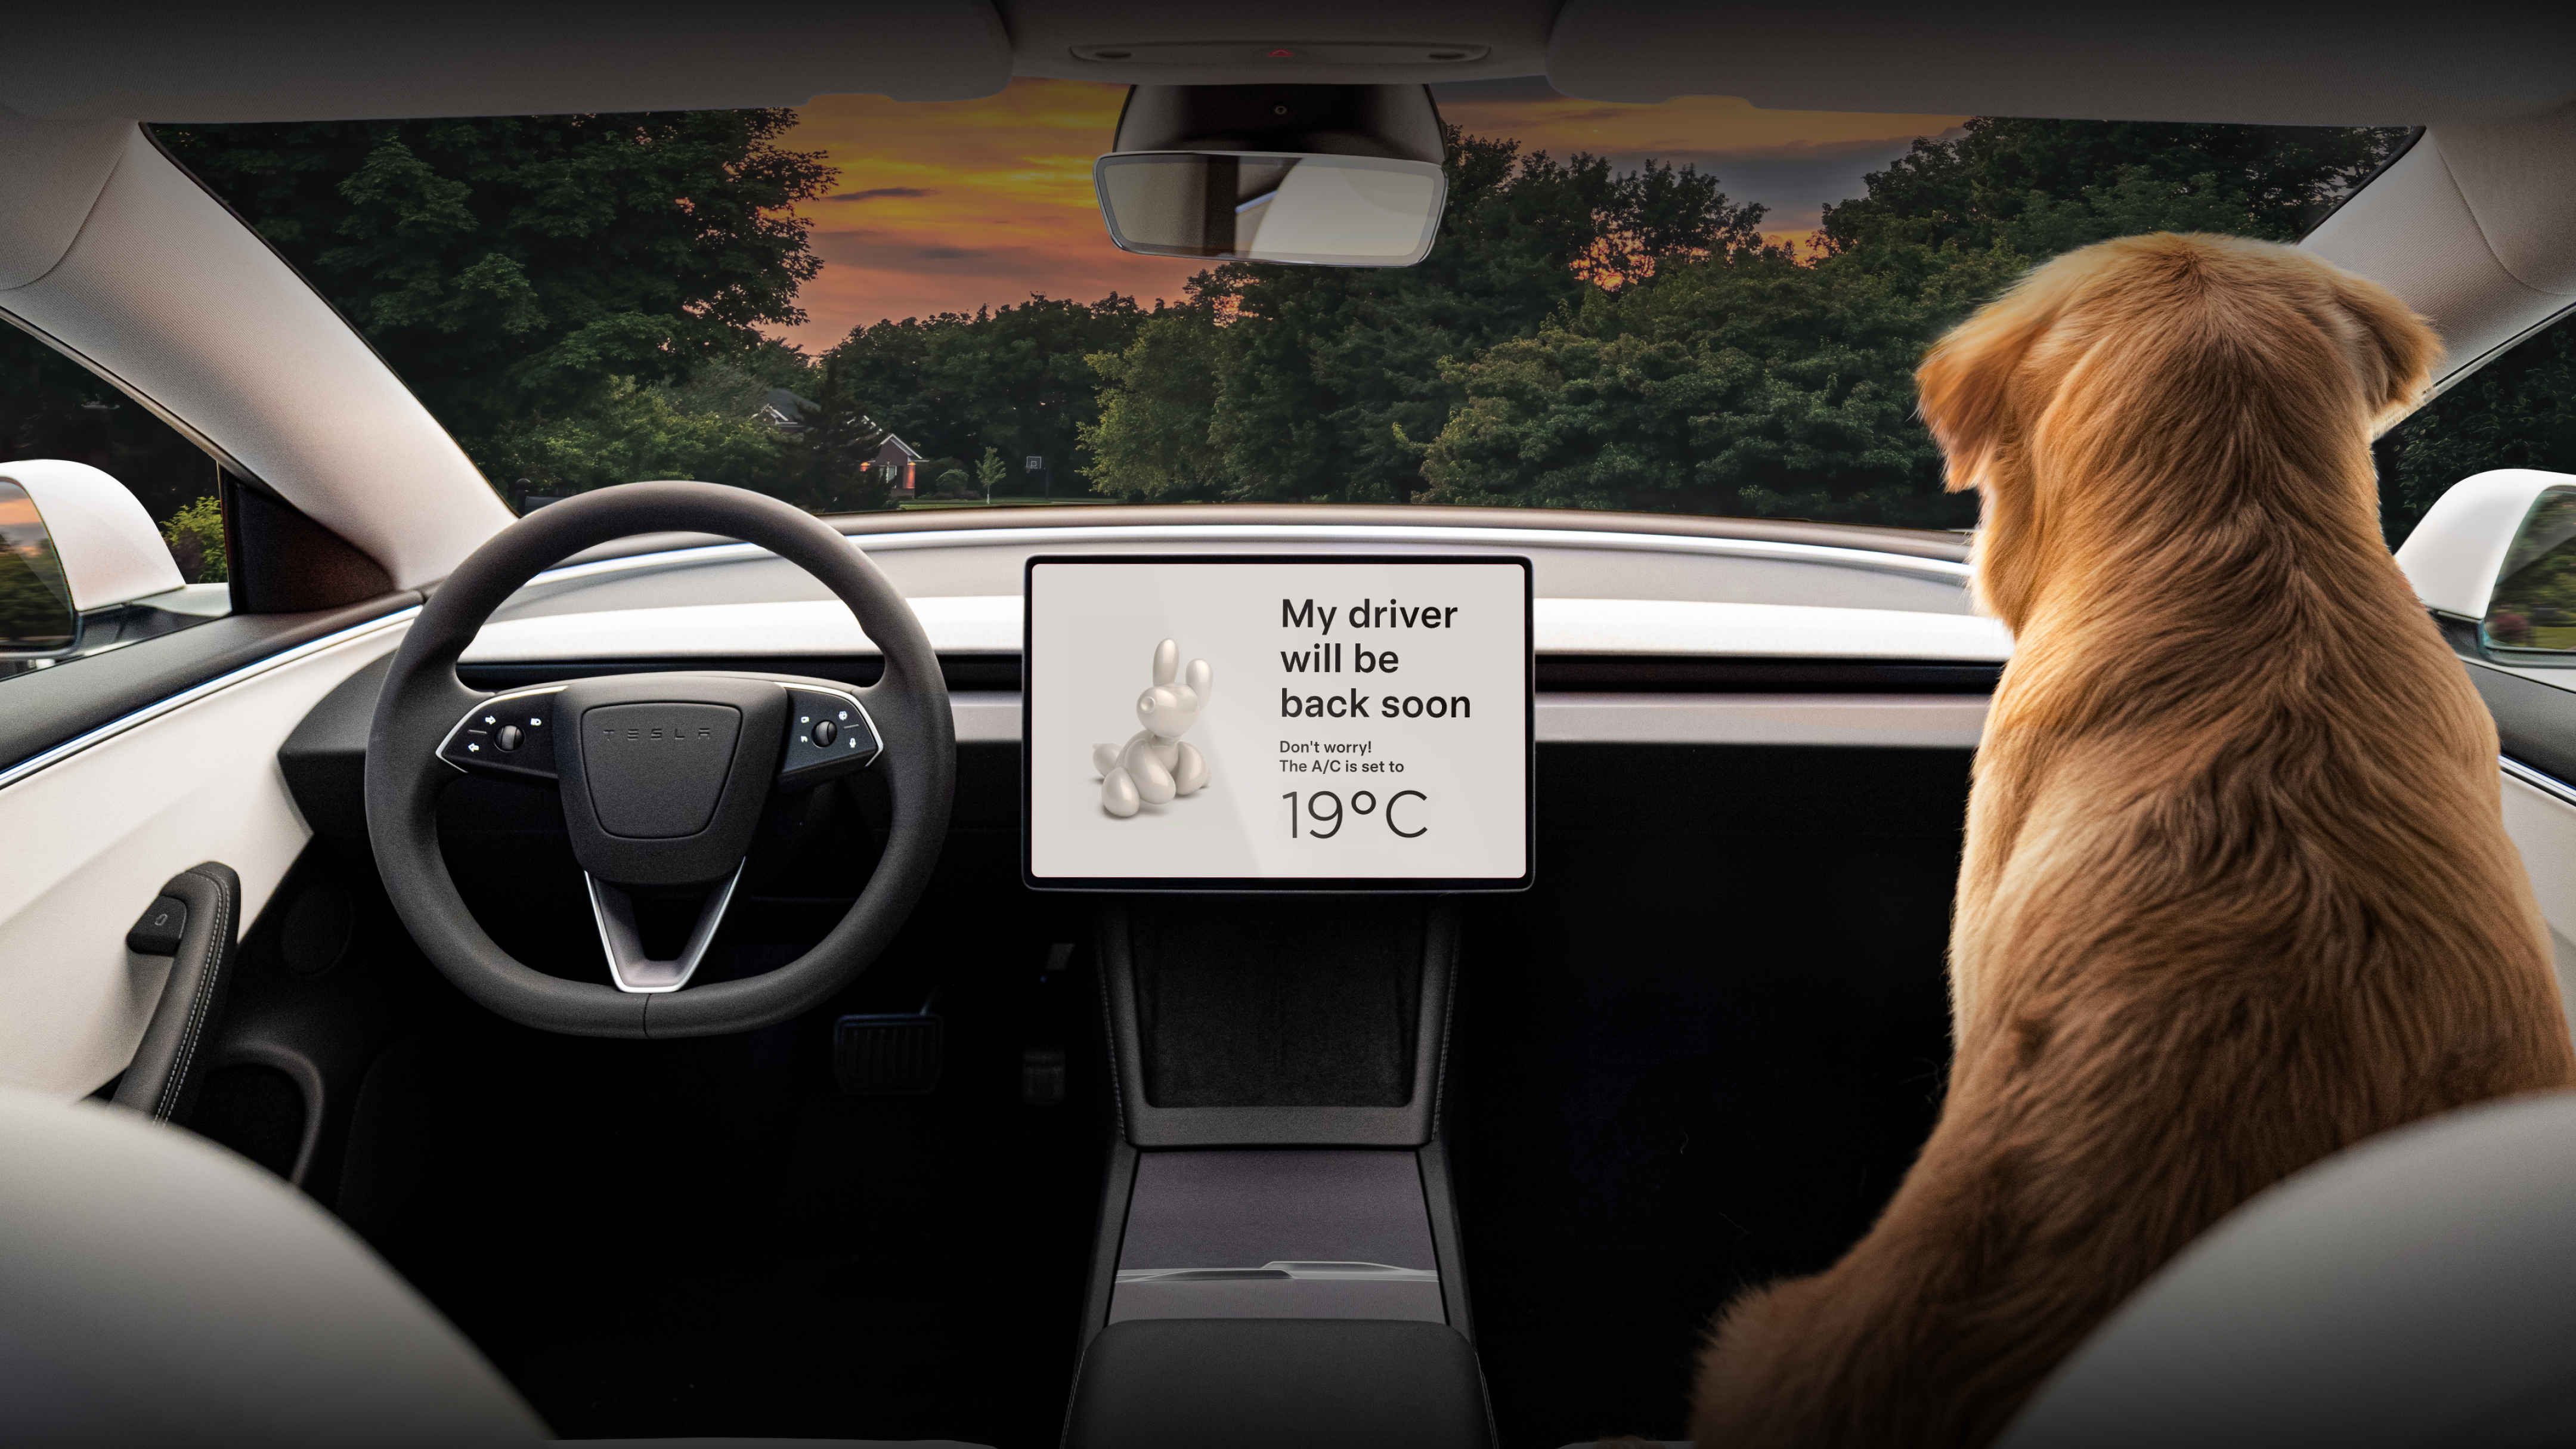 شاشة لمس مركزية تعرض العبارة "سائقي سيعود قريبًا" مع صورة لكلب جولدن ريتريفير يجلس على مقعد الراكب الأمامي.